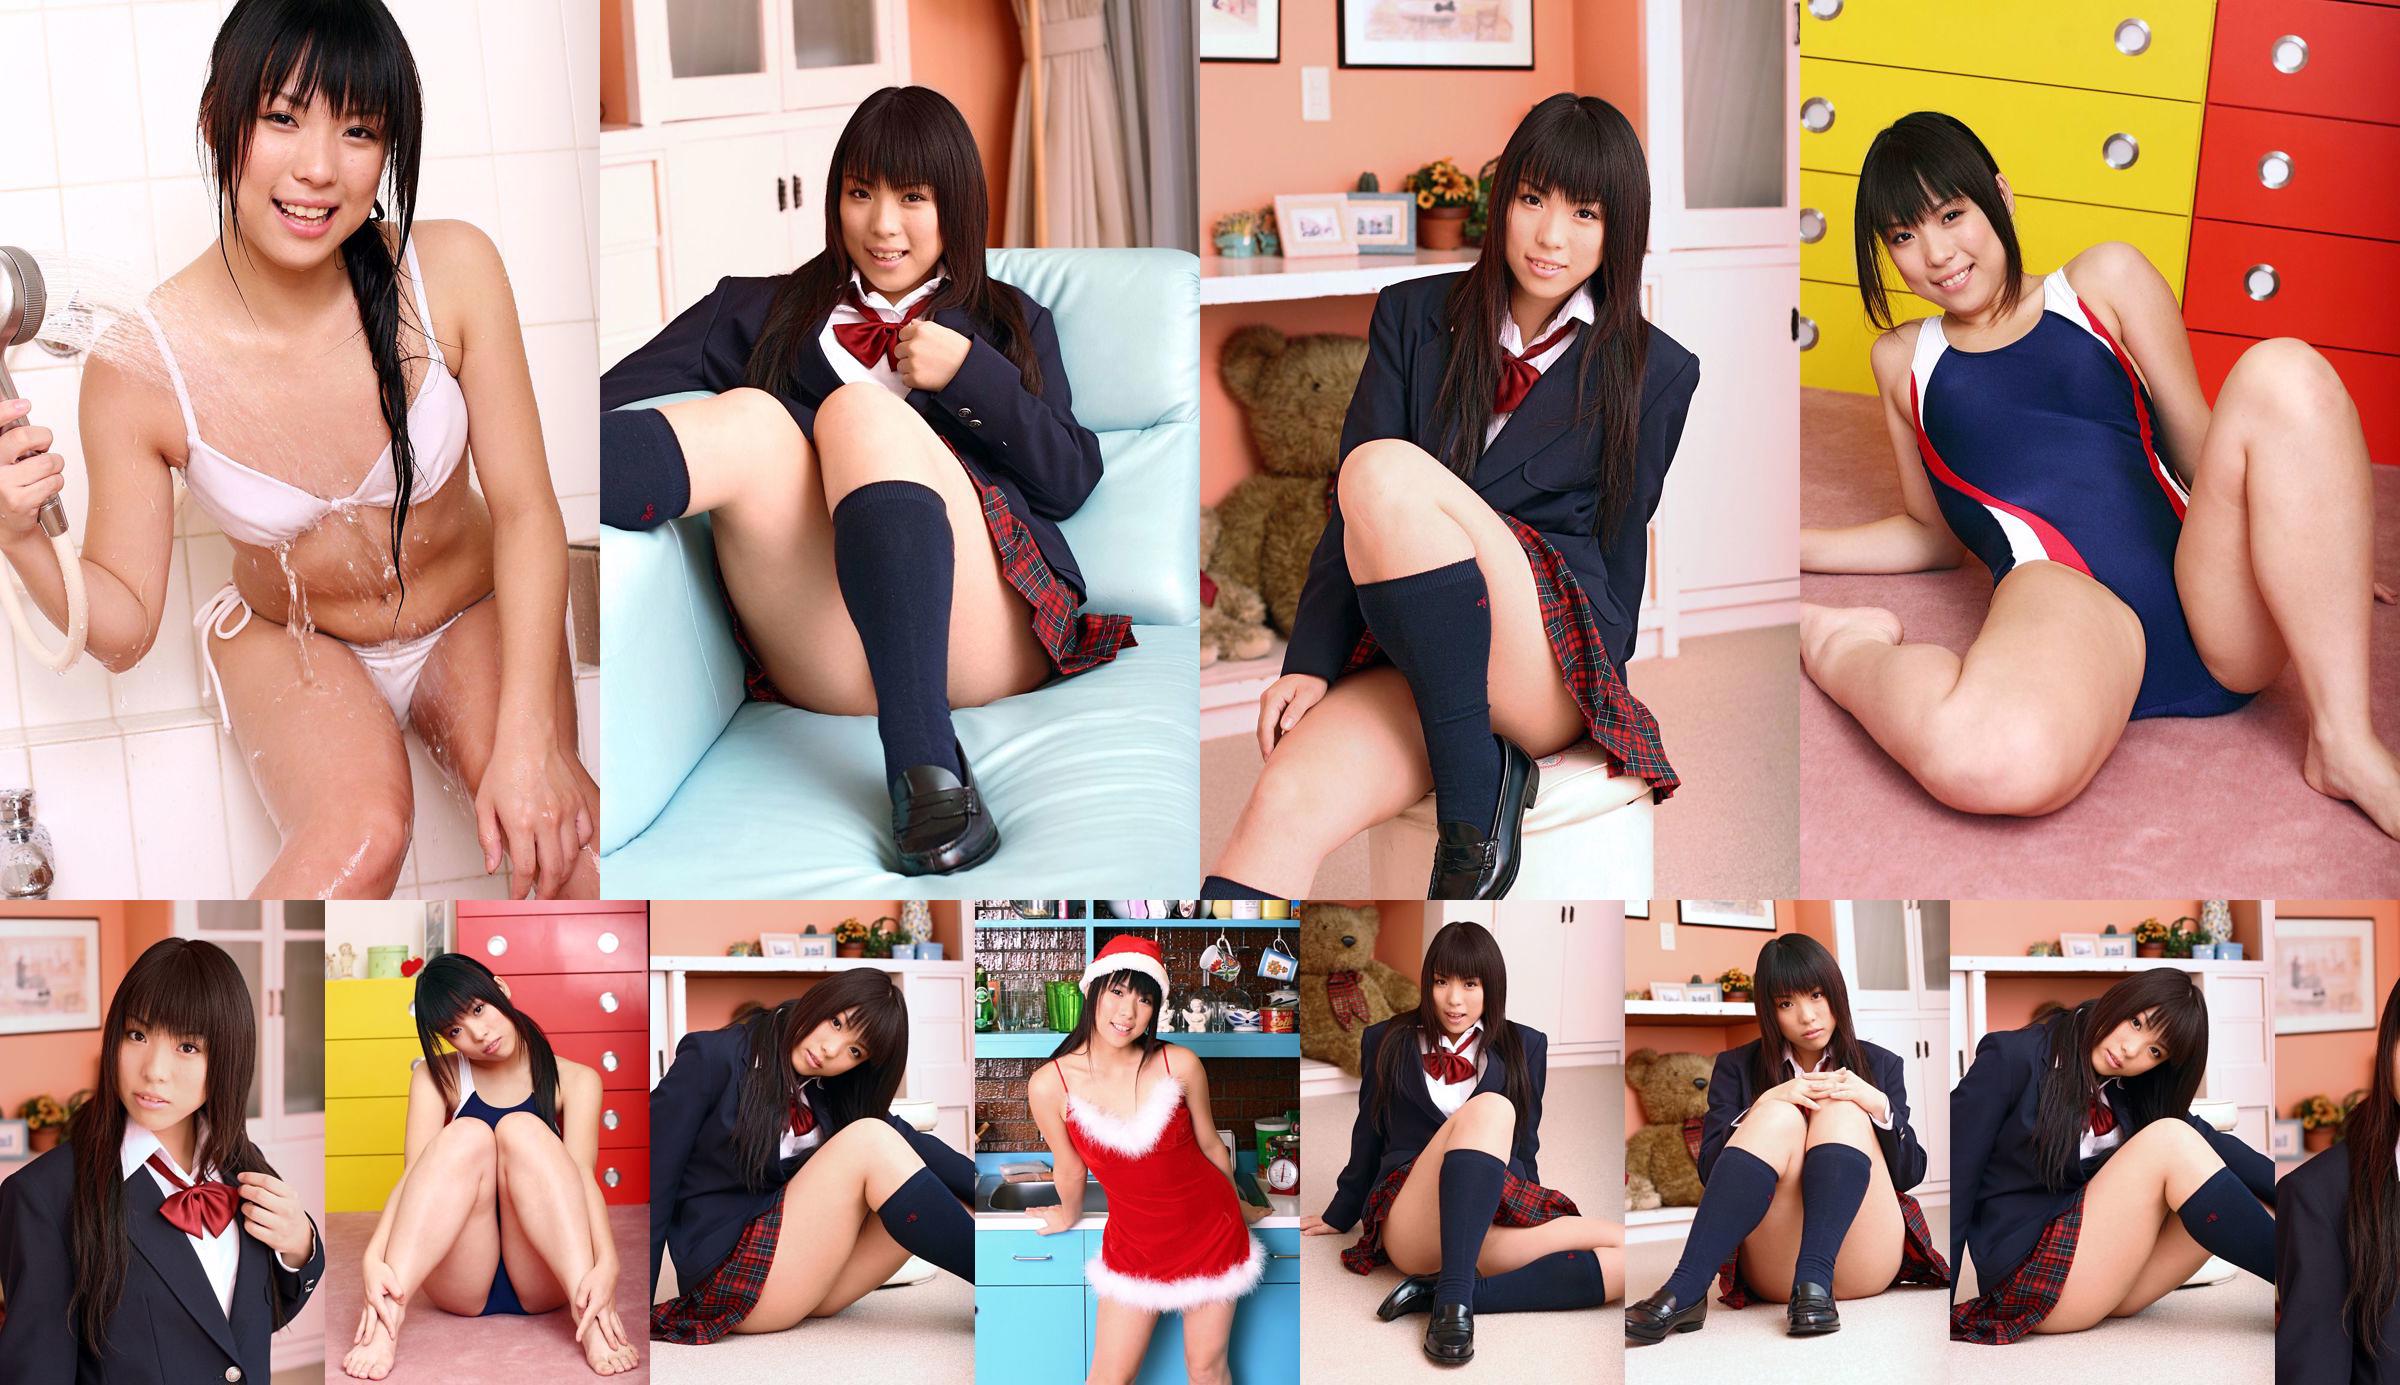 [DGC] Nr. 375 Chiharu Shirakawa Uniform schönes Mädchen Himmel No.c26474 Seite 6